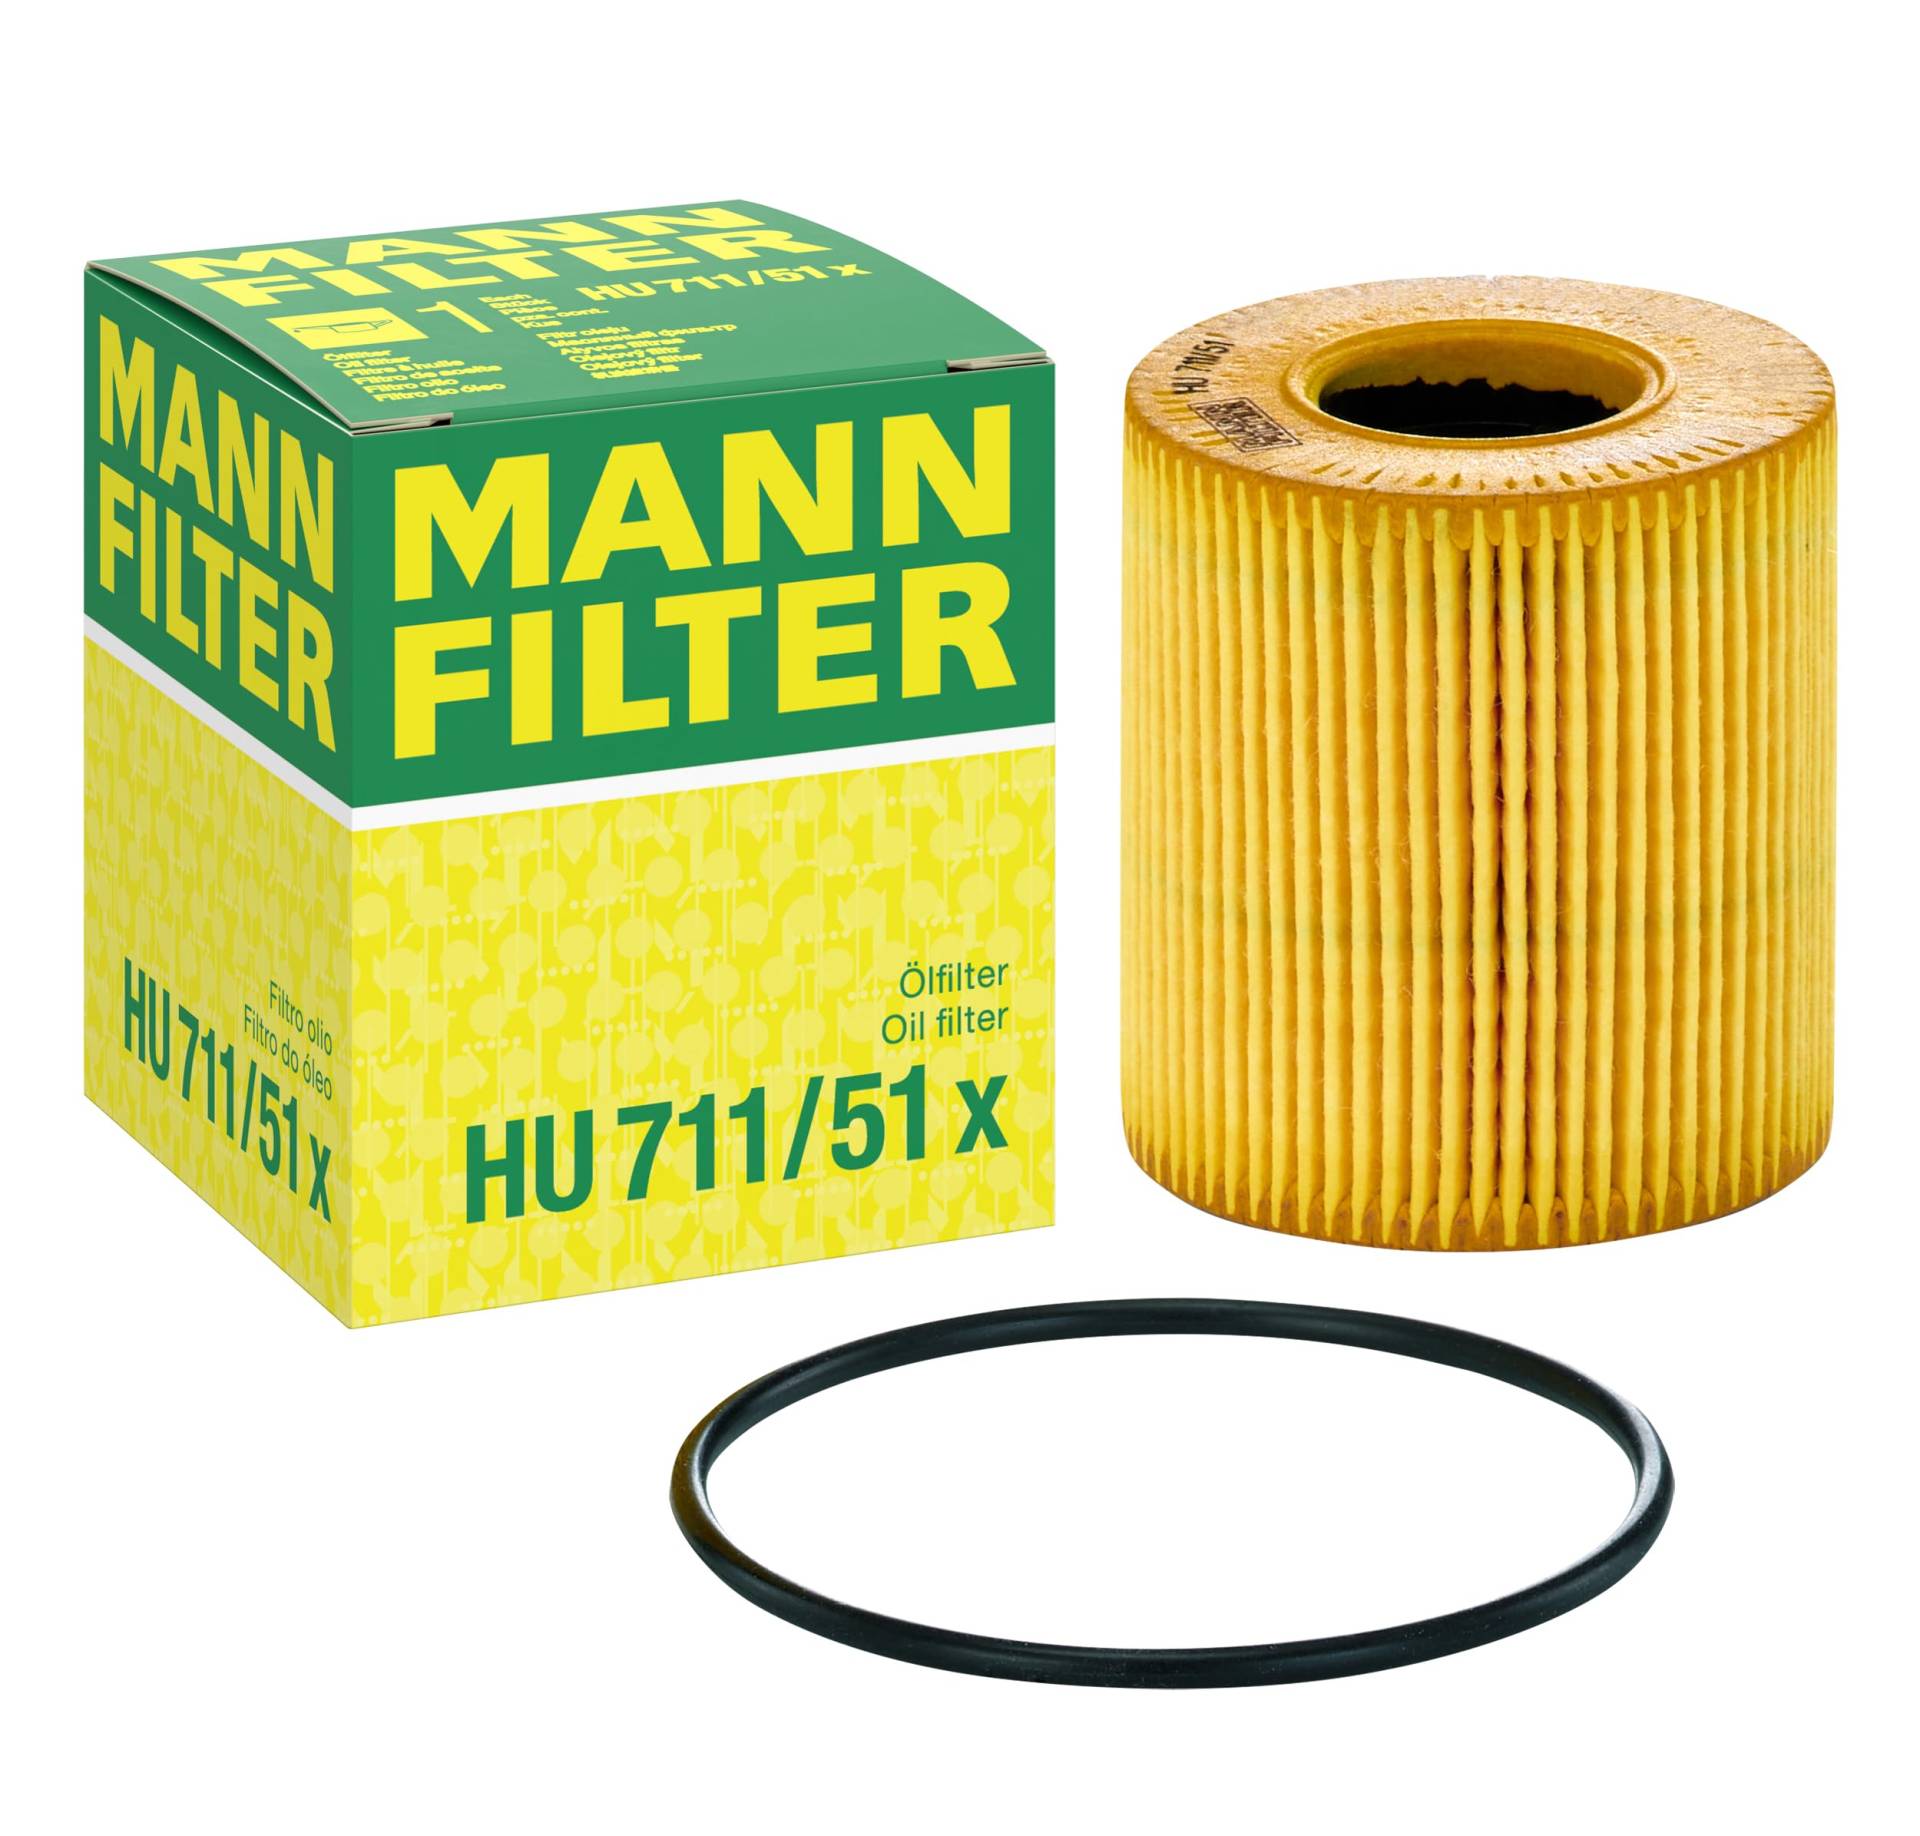 MANN-FILTER HU 711/51 X Ölfilter – Ölfilter Satz mit Dichtung / Dichtungssatz – Für PKW von MANN-FILTER